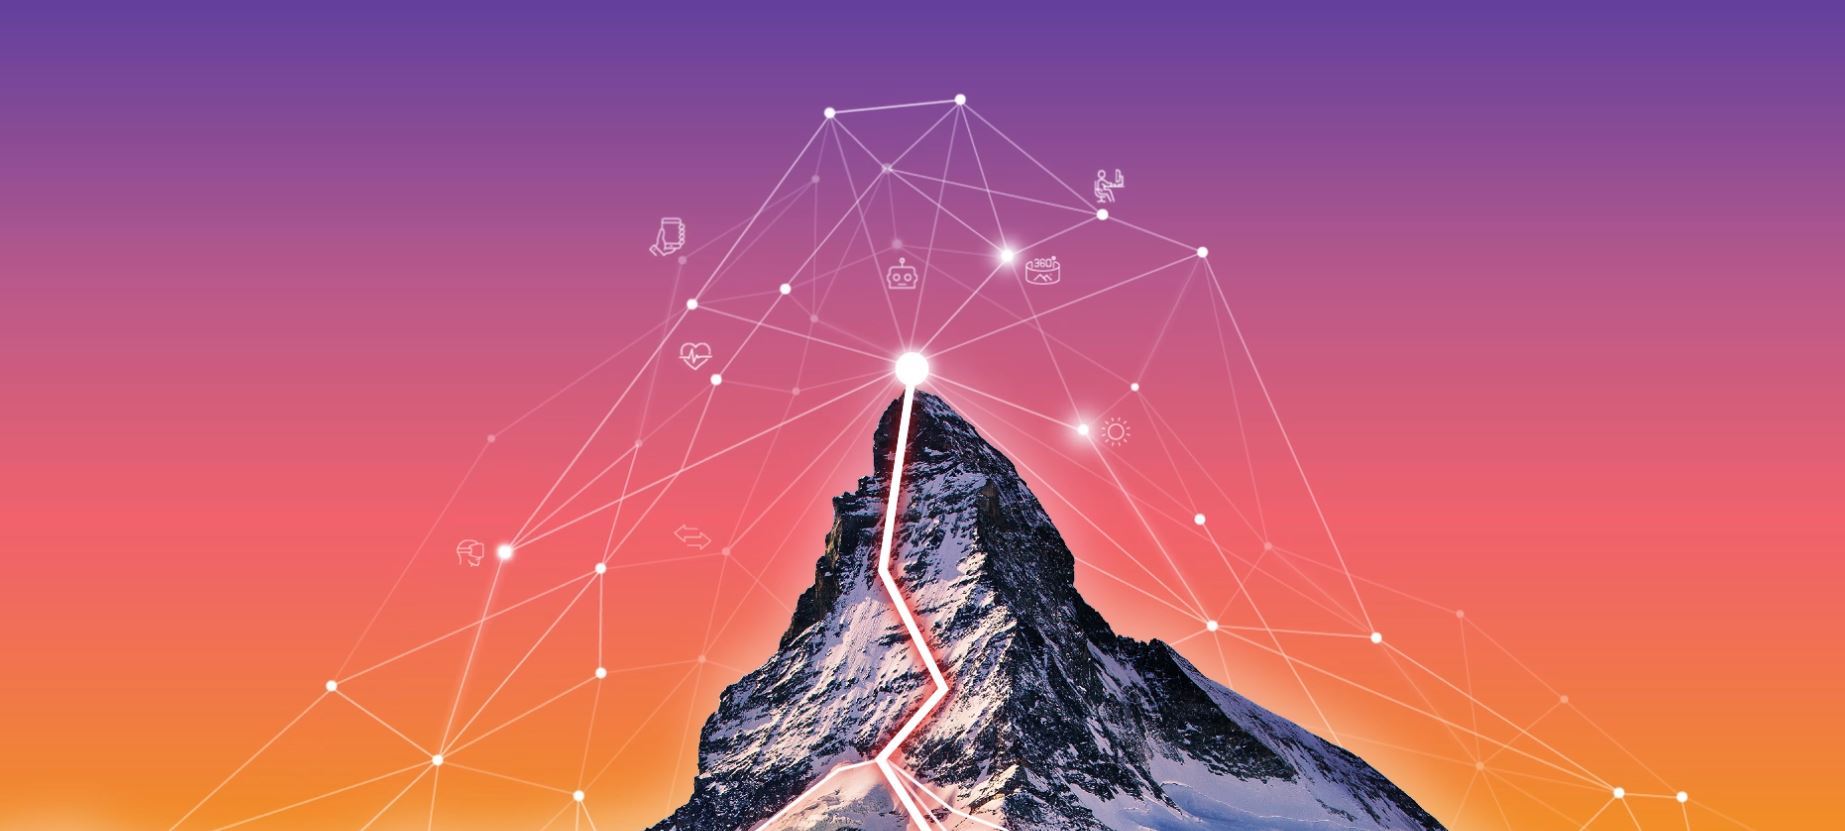 Grâce au réseau de digital Switzerland, le Valais désire entrer de plein pied dans la transition numérique.